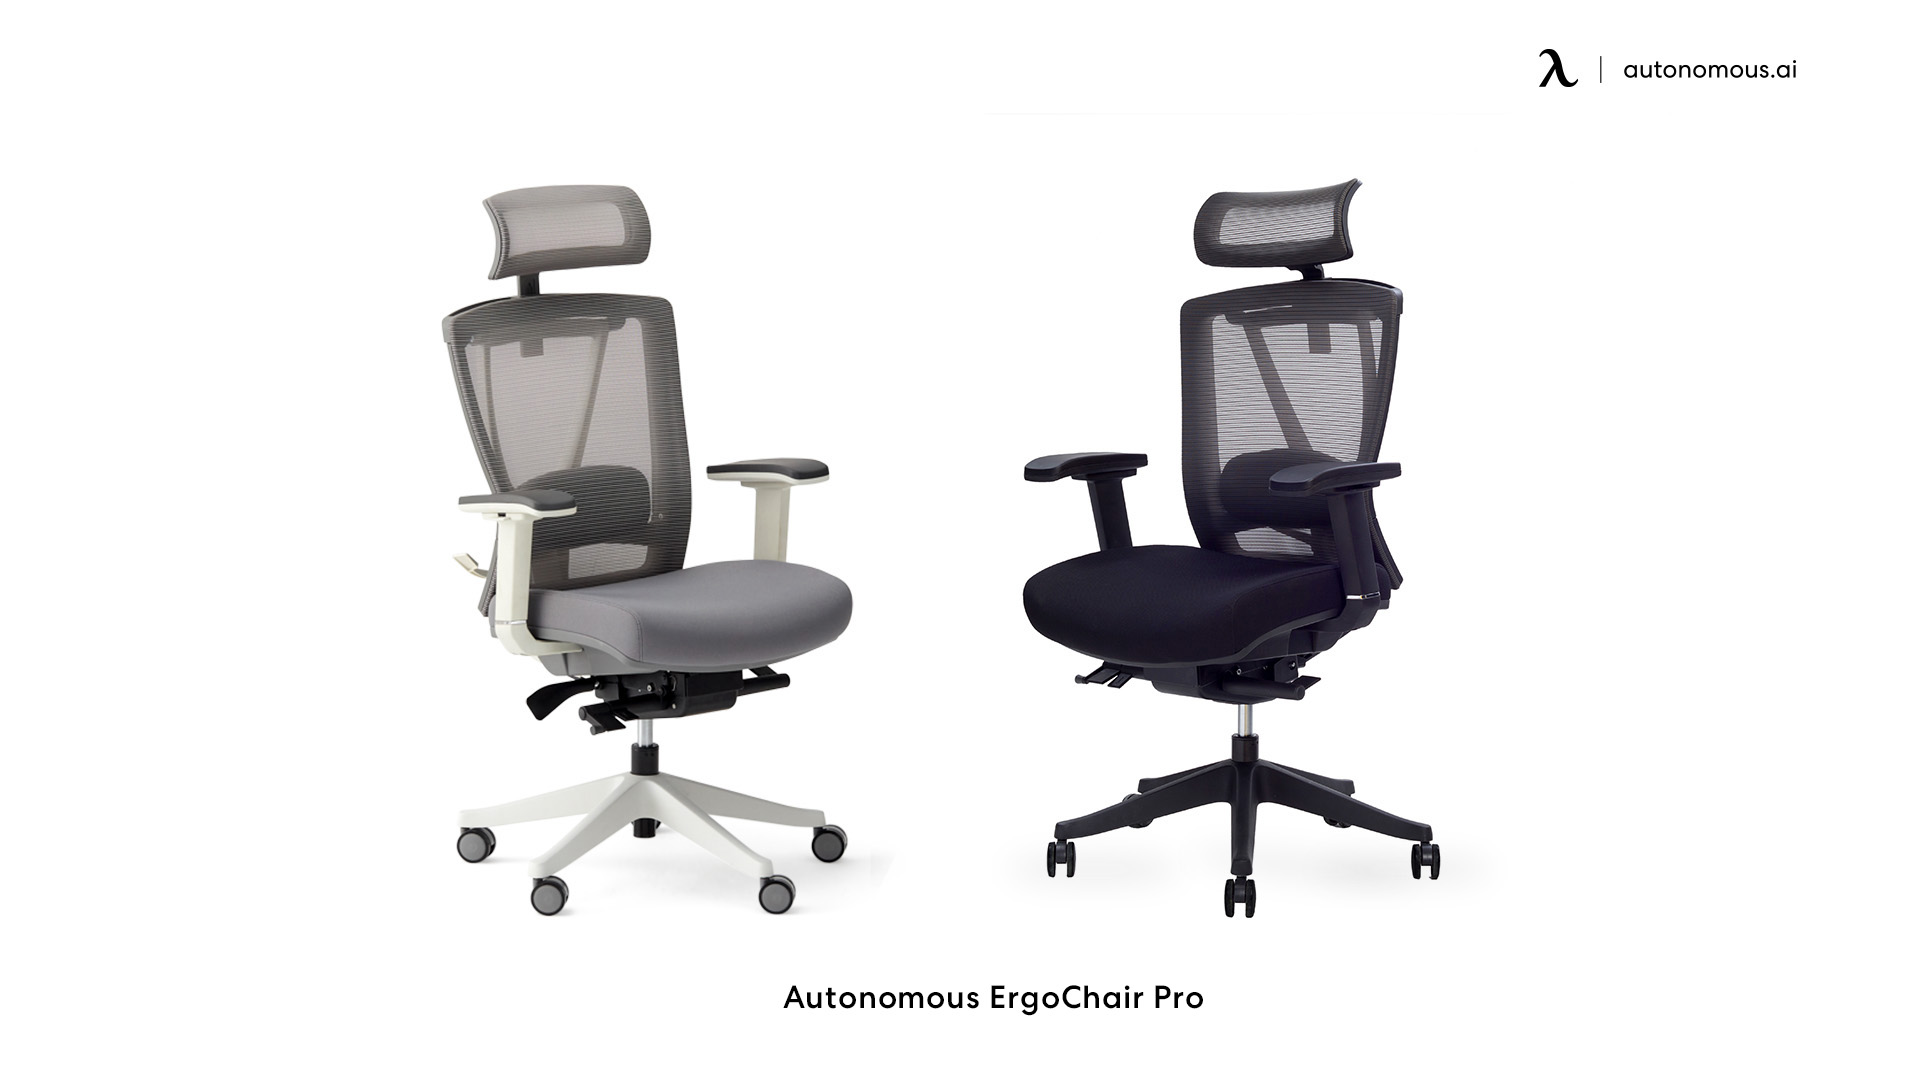 ErgoChair Pro wide seat office chair